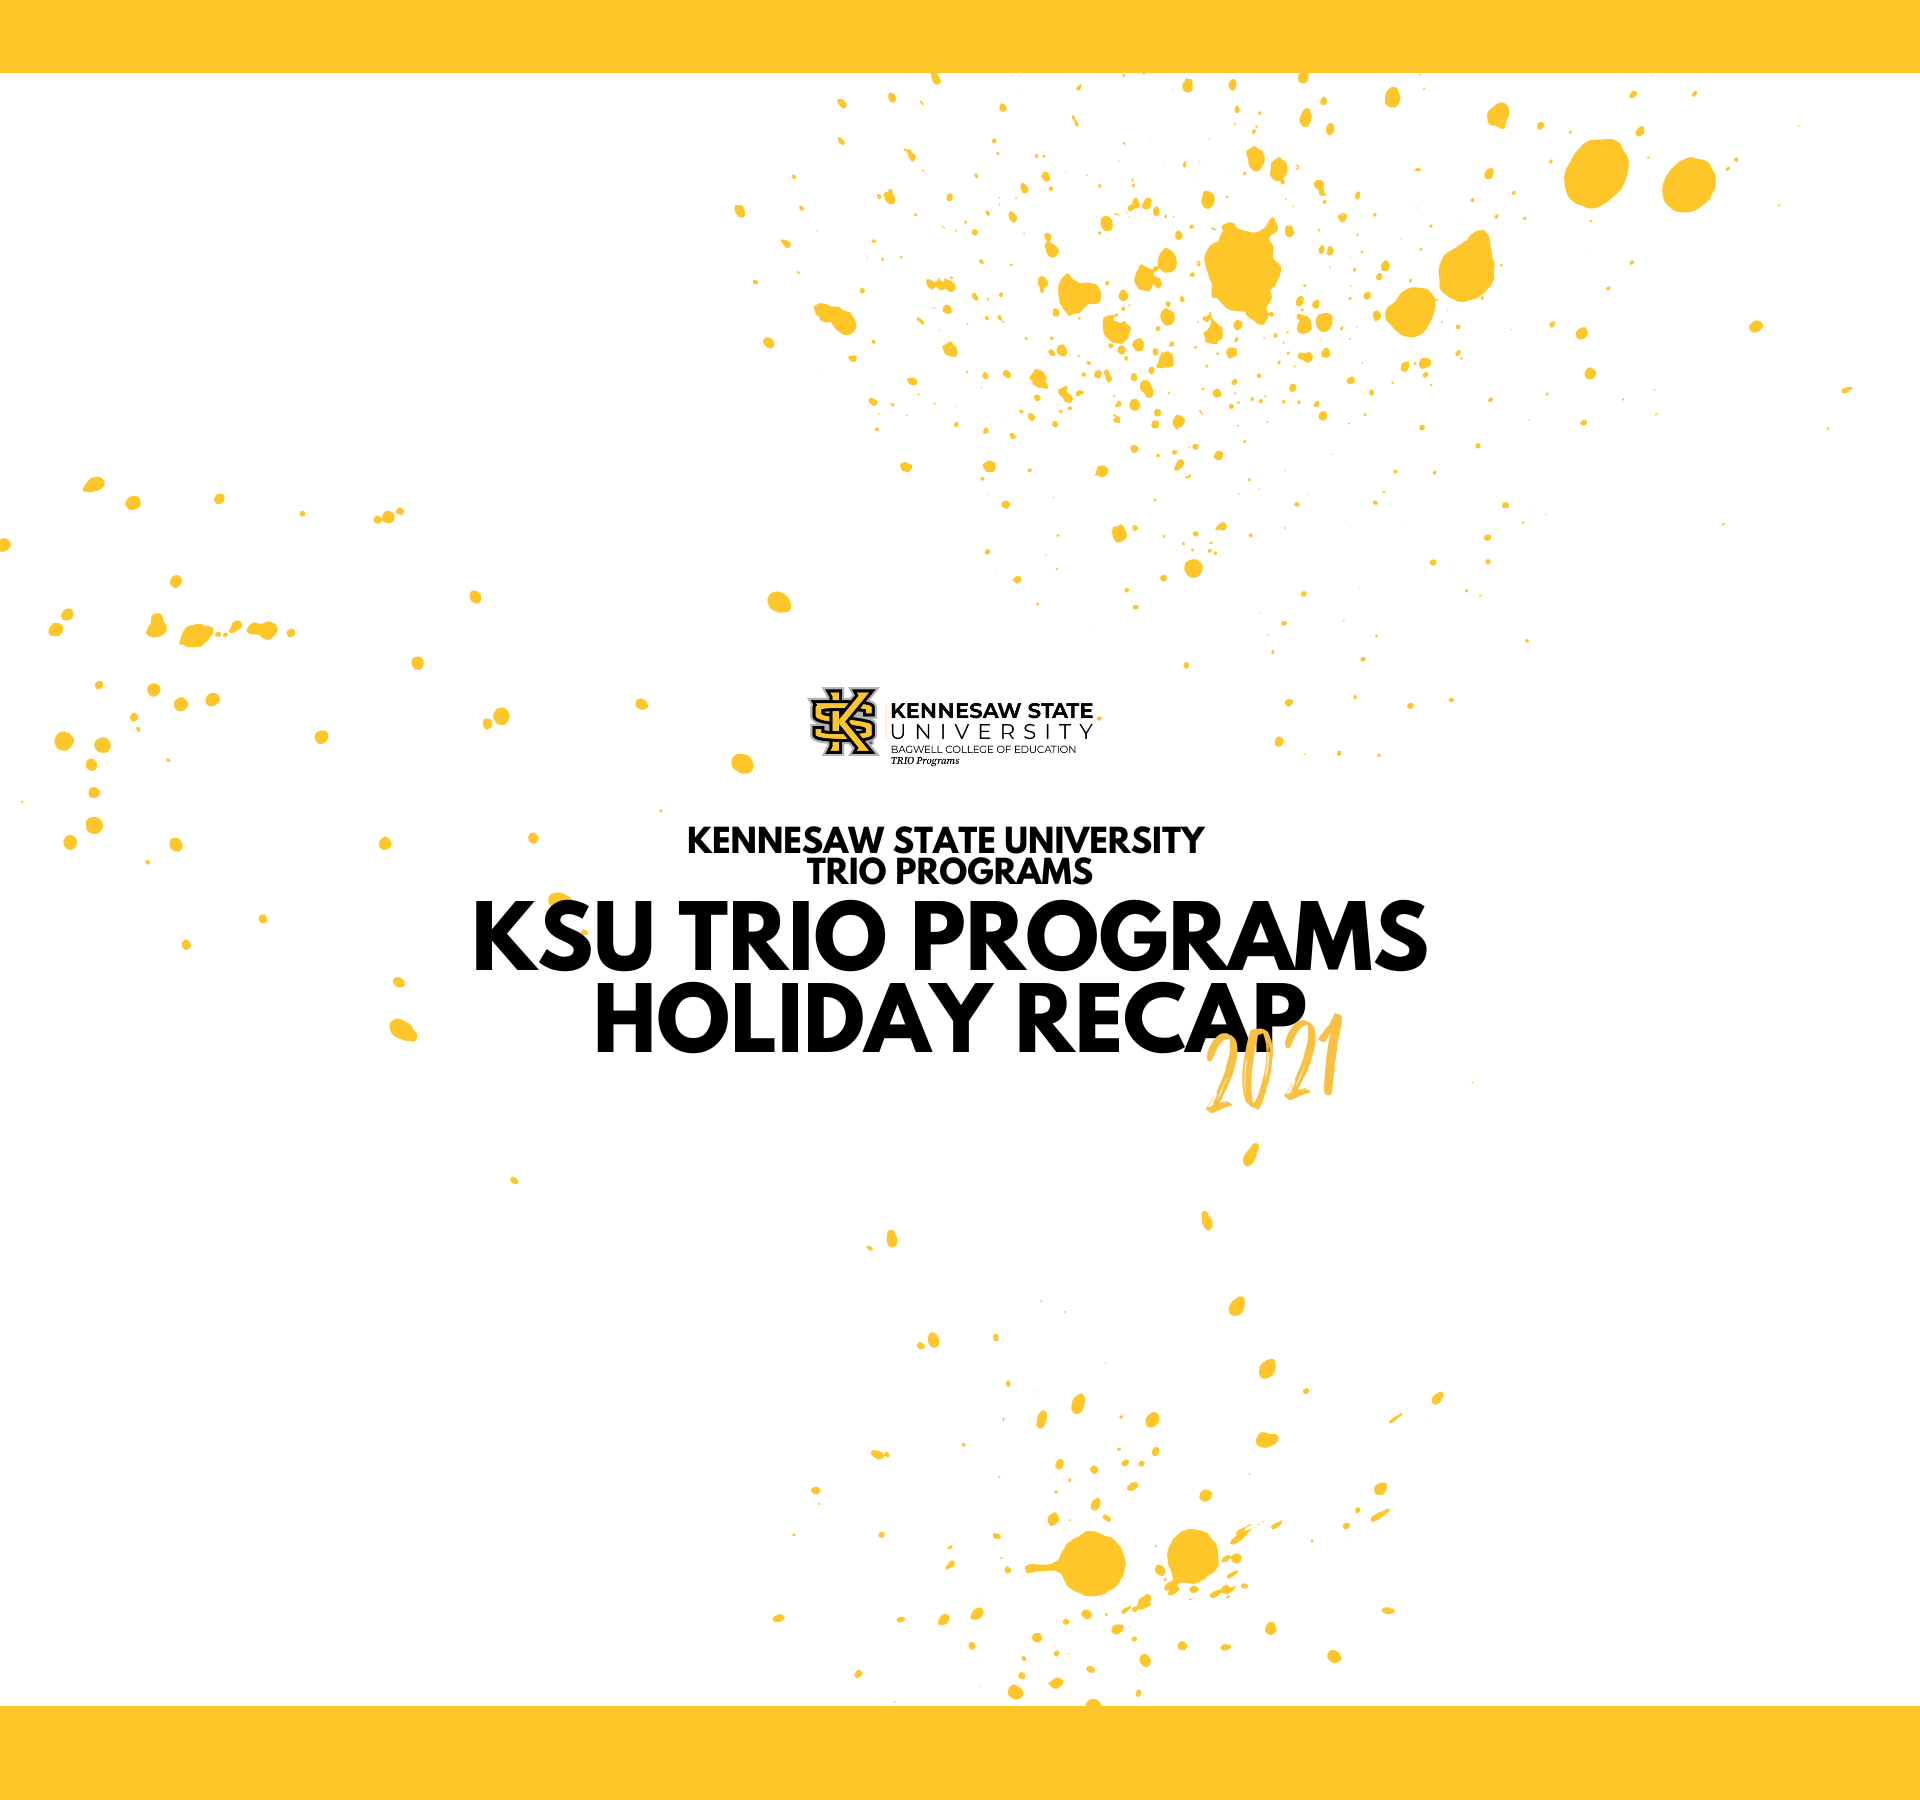 KSU TRIO Holiday Recap 2021